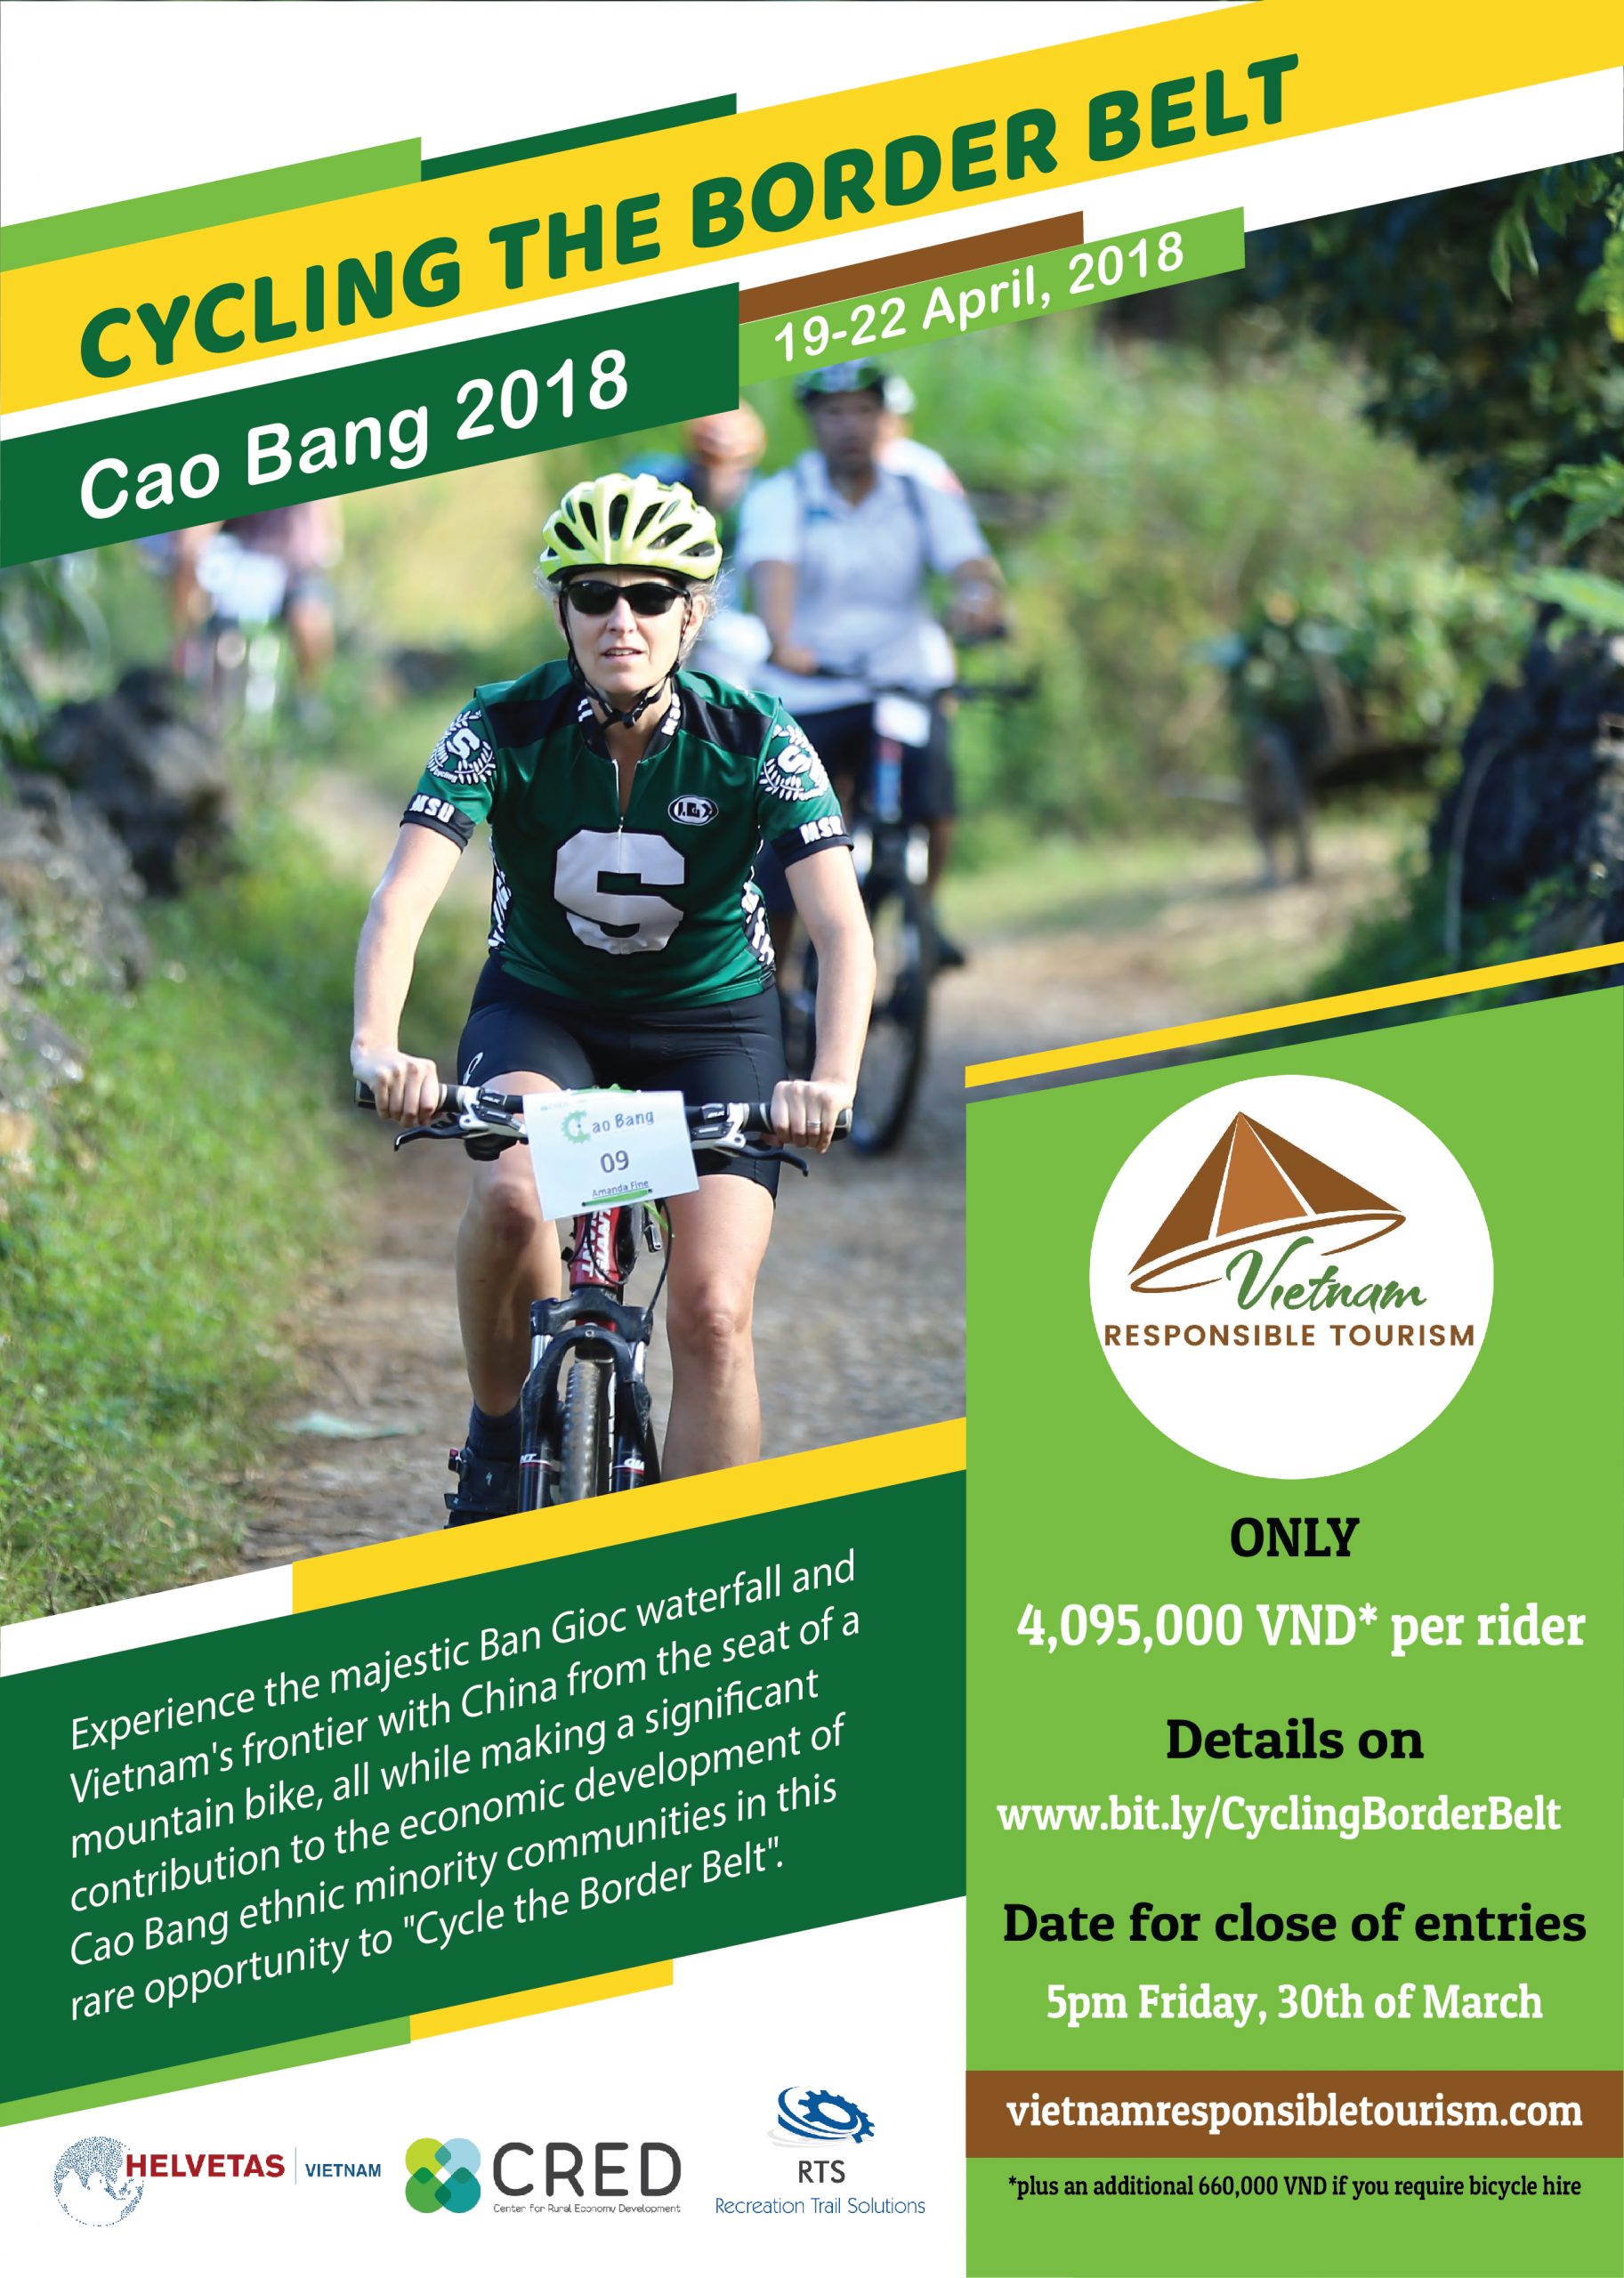 Cycling the Border Belt Cao Bang 2018